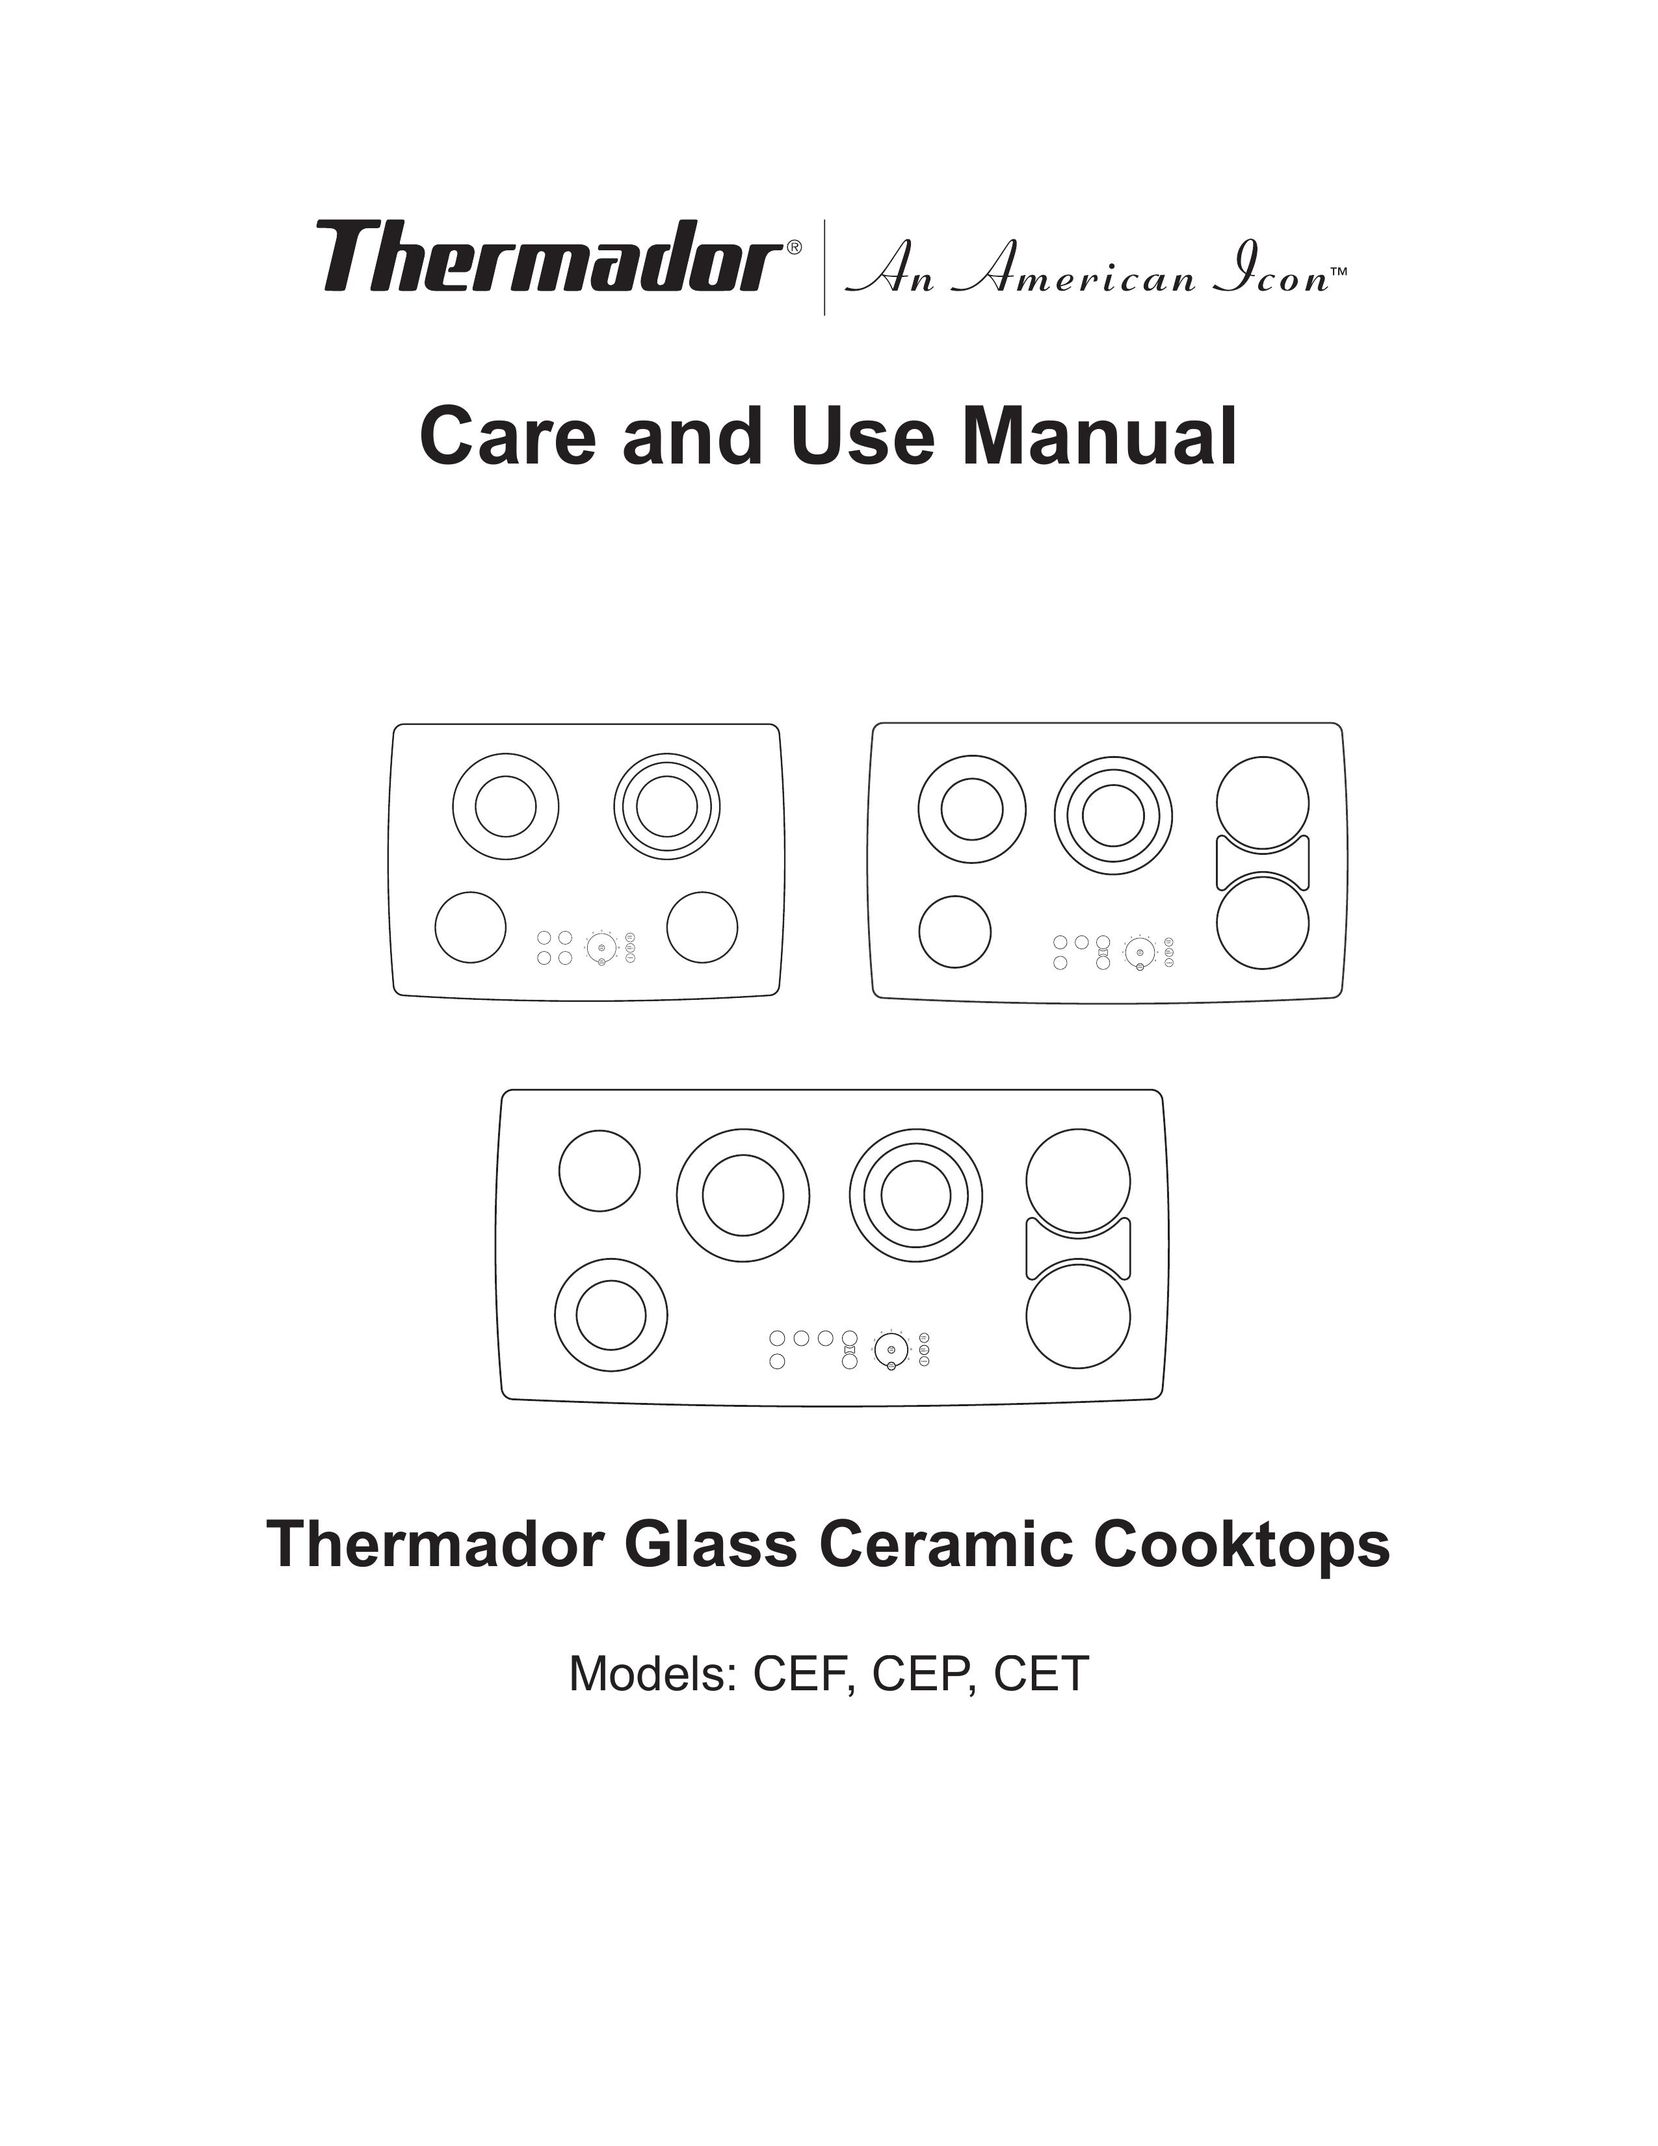 Thermador CEF Cooktop User Manual